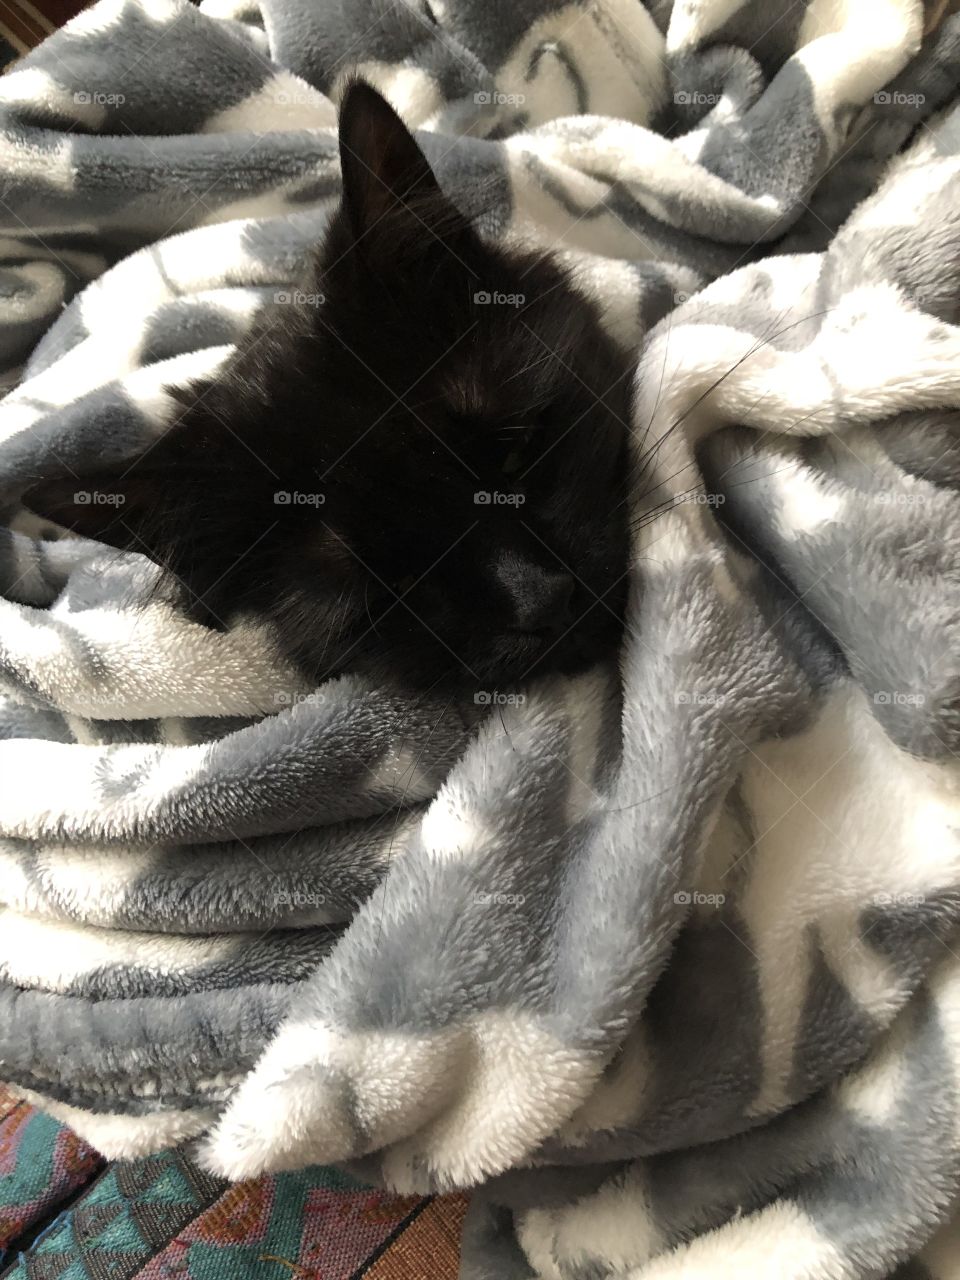 Snuggled as a big in a rug (or elephant blanket)